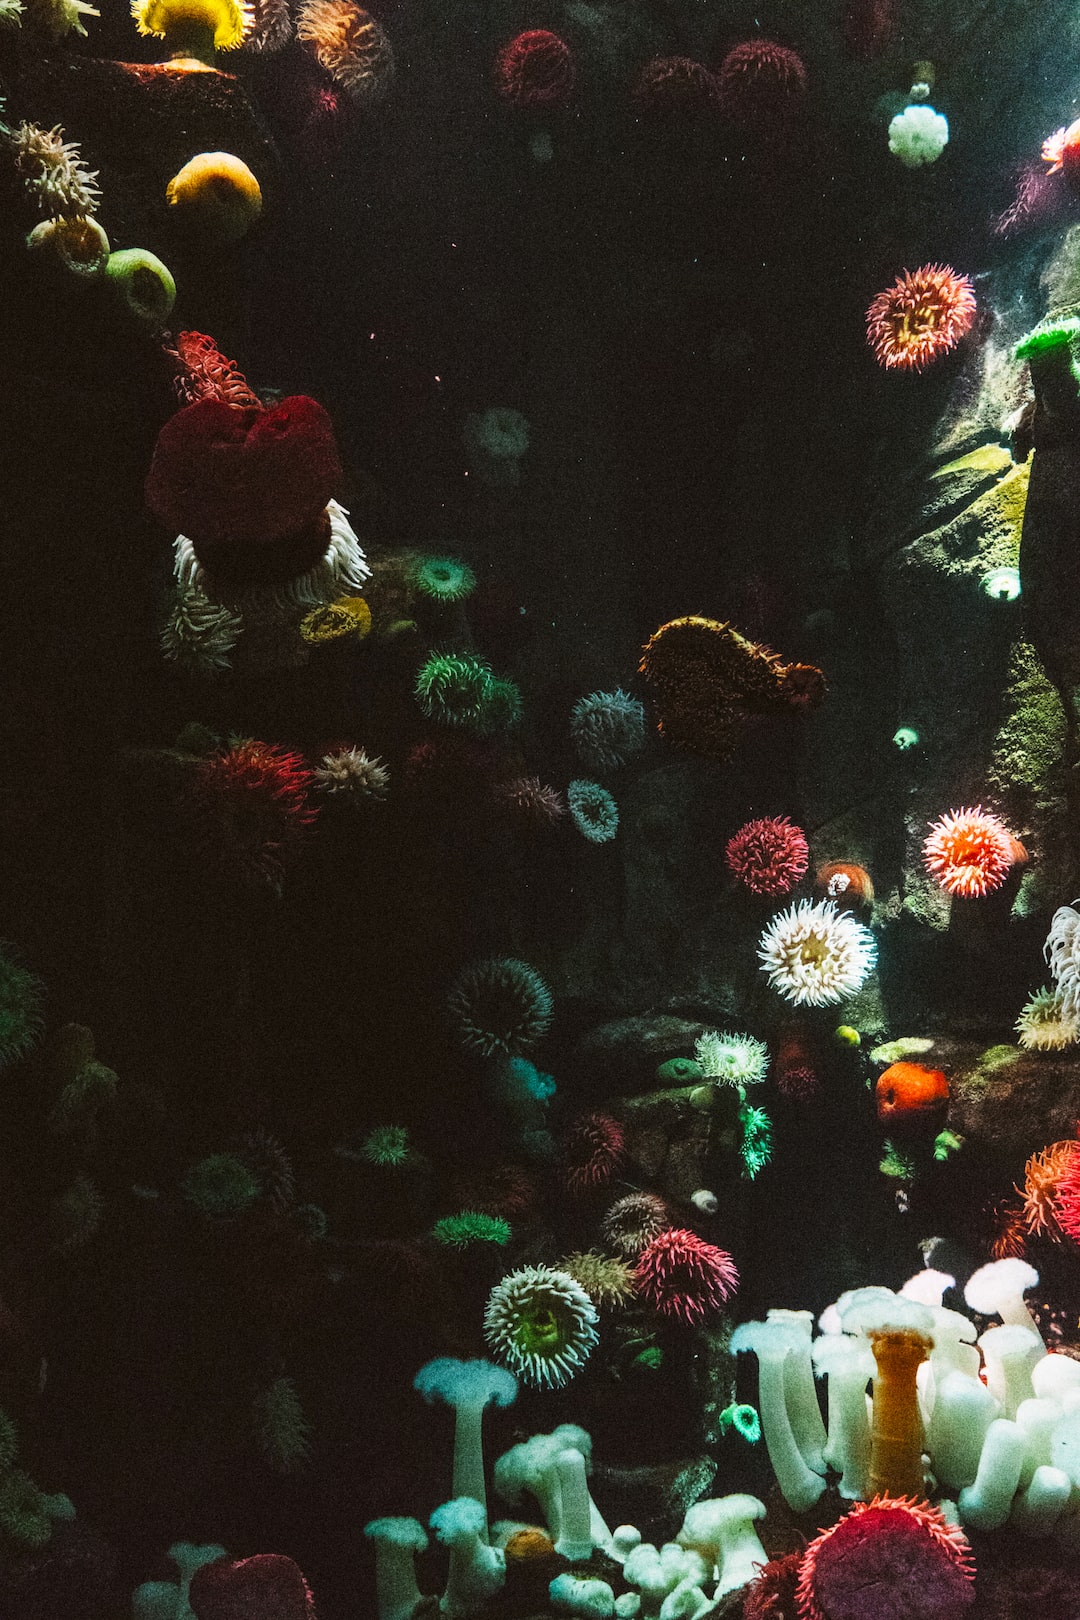 Schmerle Aquarium